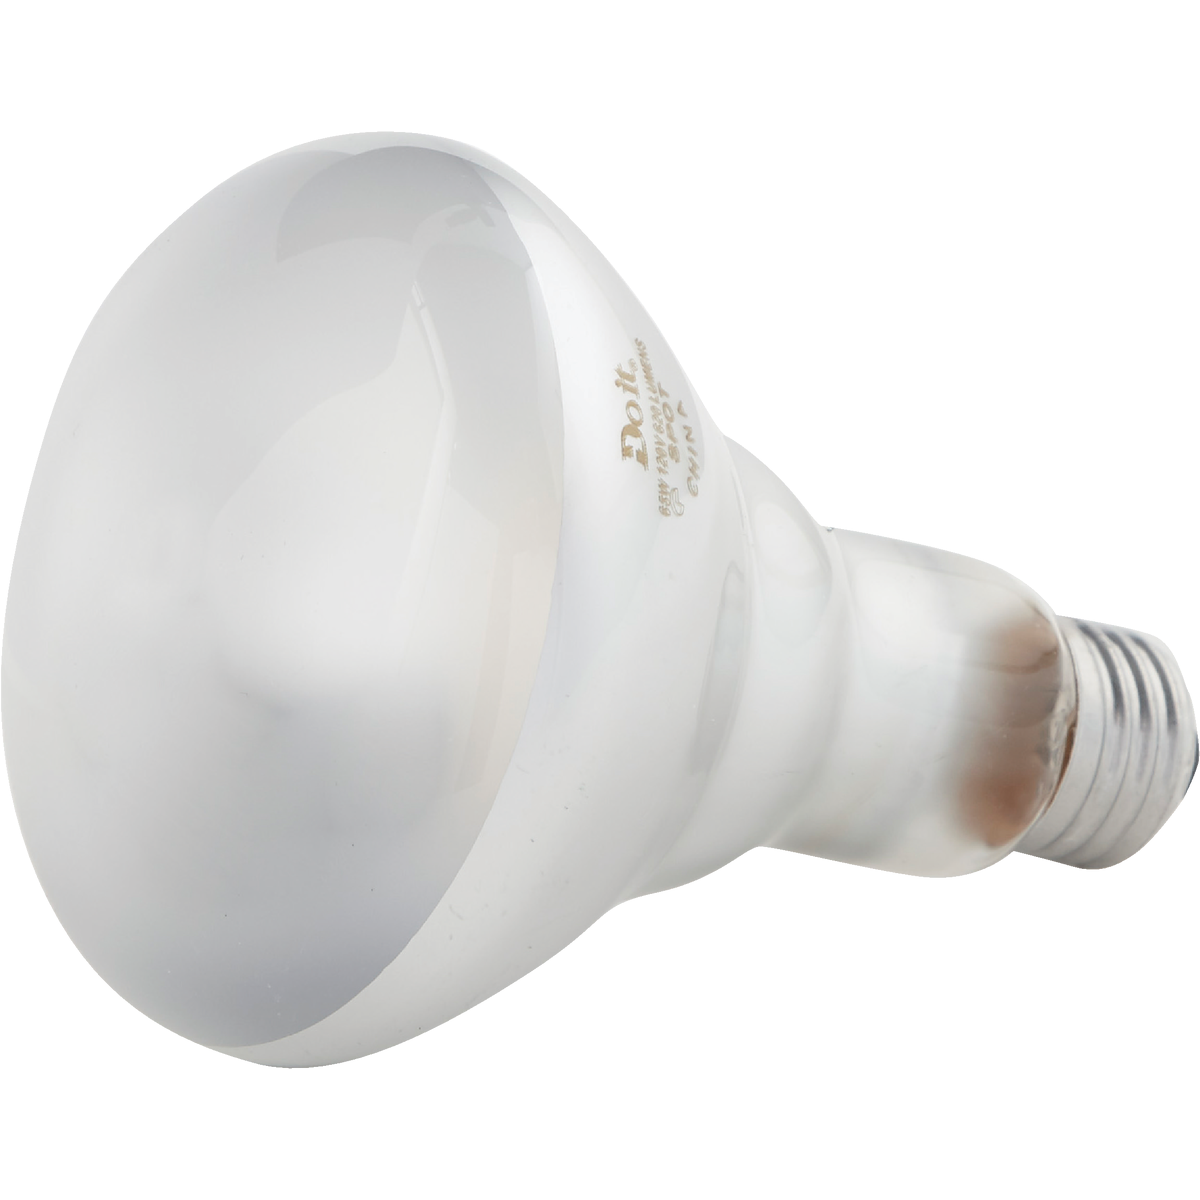 Incandescent Spotlight Light Bulb